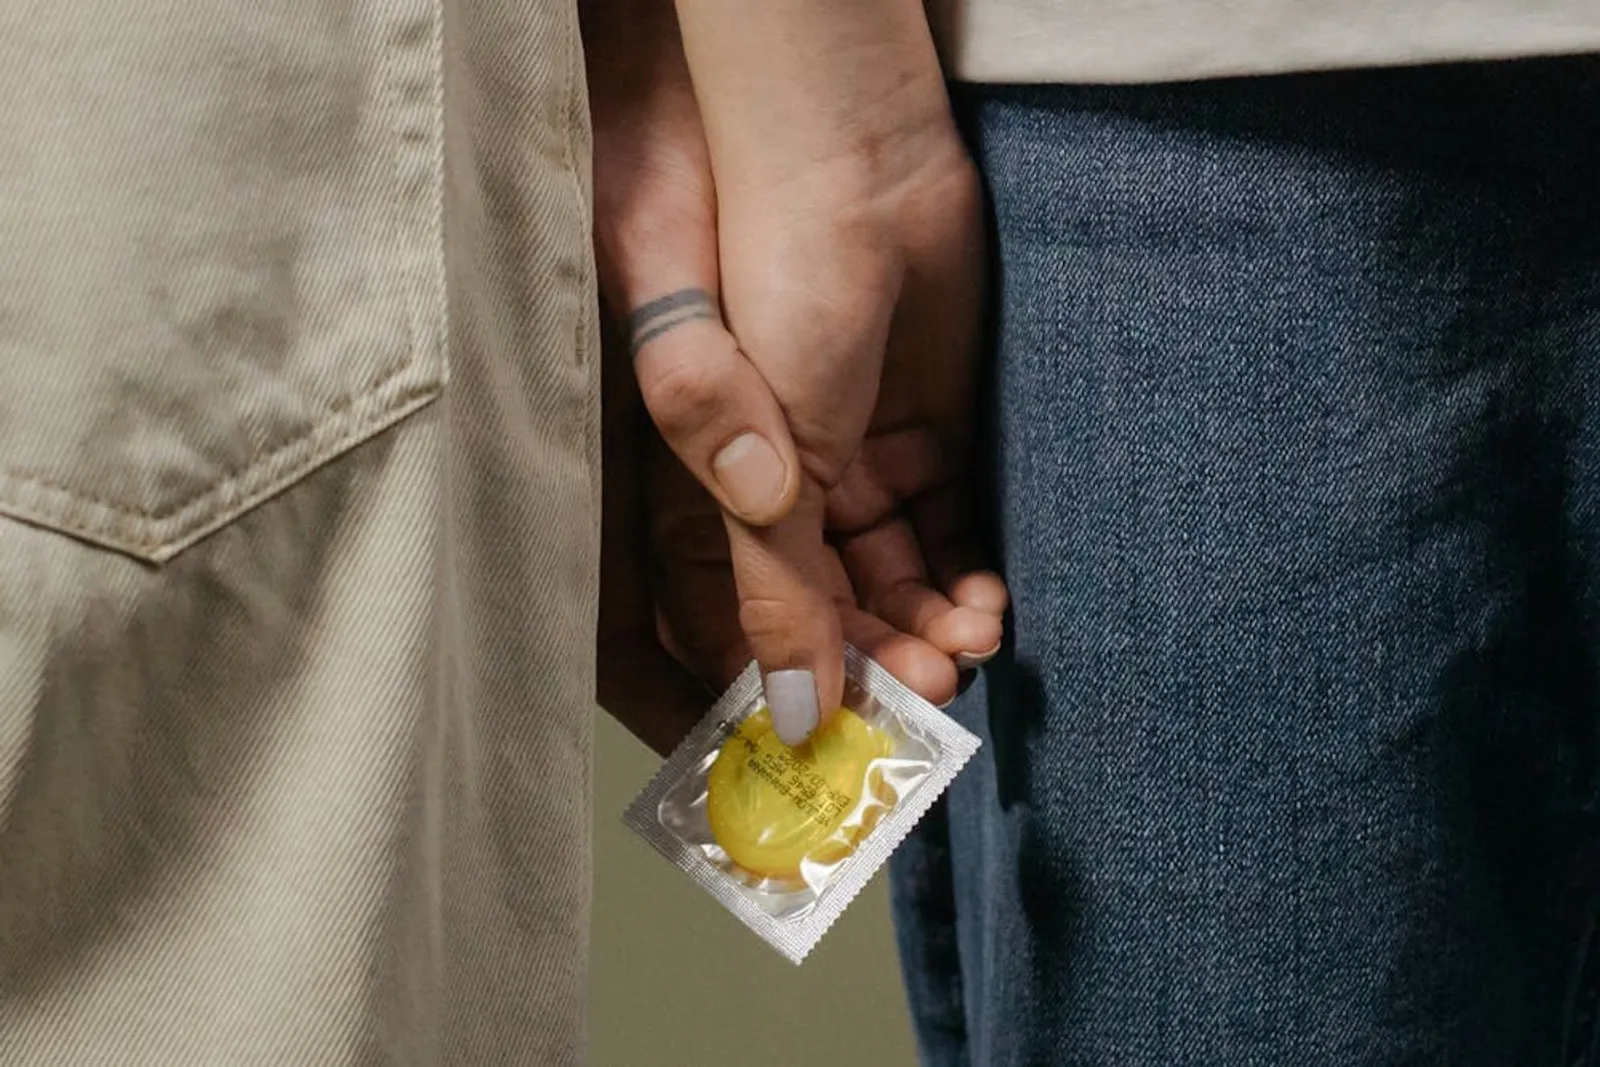 DKT Luncurkan Sutra 003, Inovasi untuk Pria yang Enggan Pakai Kondom